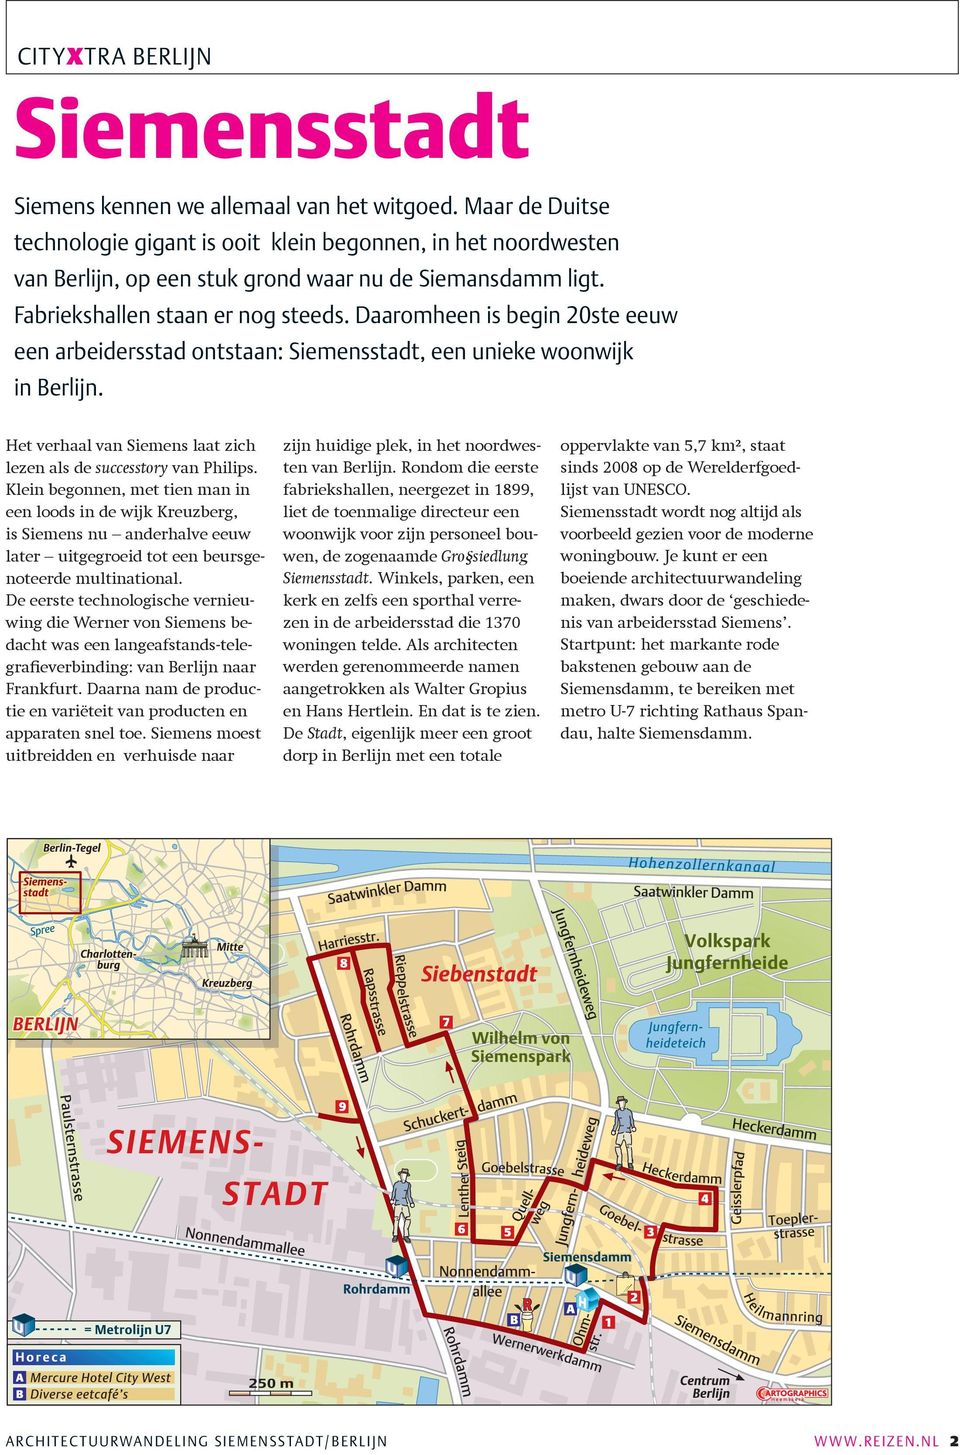 Klein begonnen, met tien man in een loods in de wijk Kreuzberg, is Siemens nu anderhalve eeuw later uitgegroeid tot een beursgenoteerde multinational.